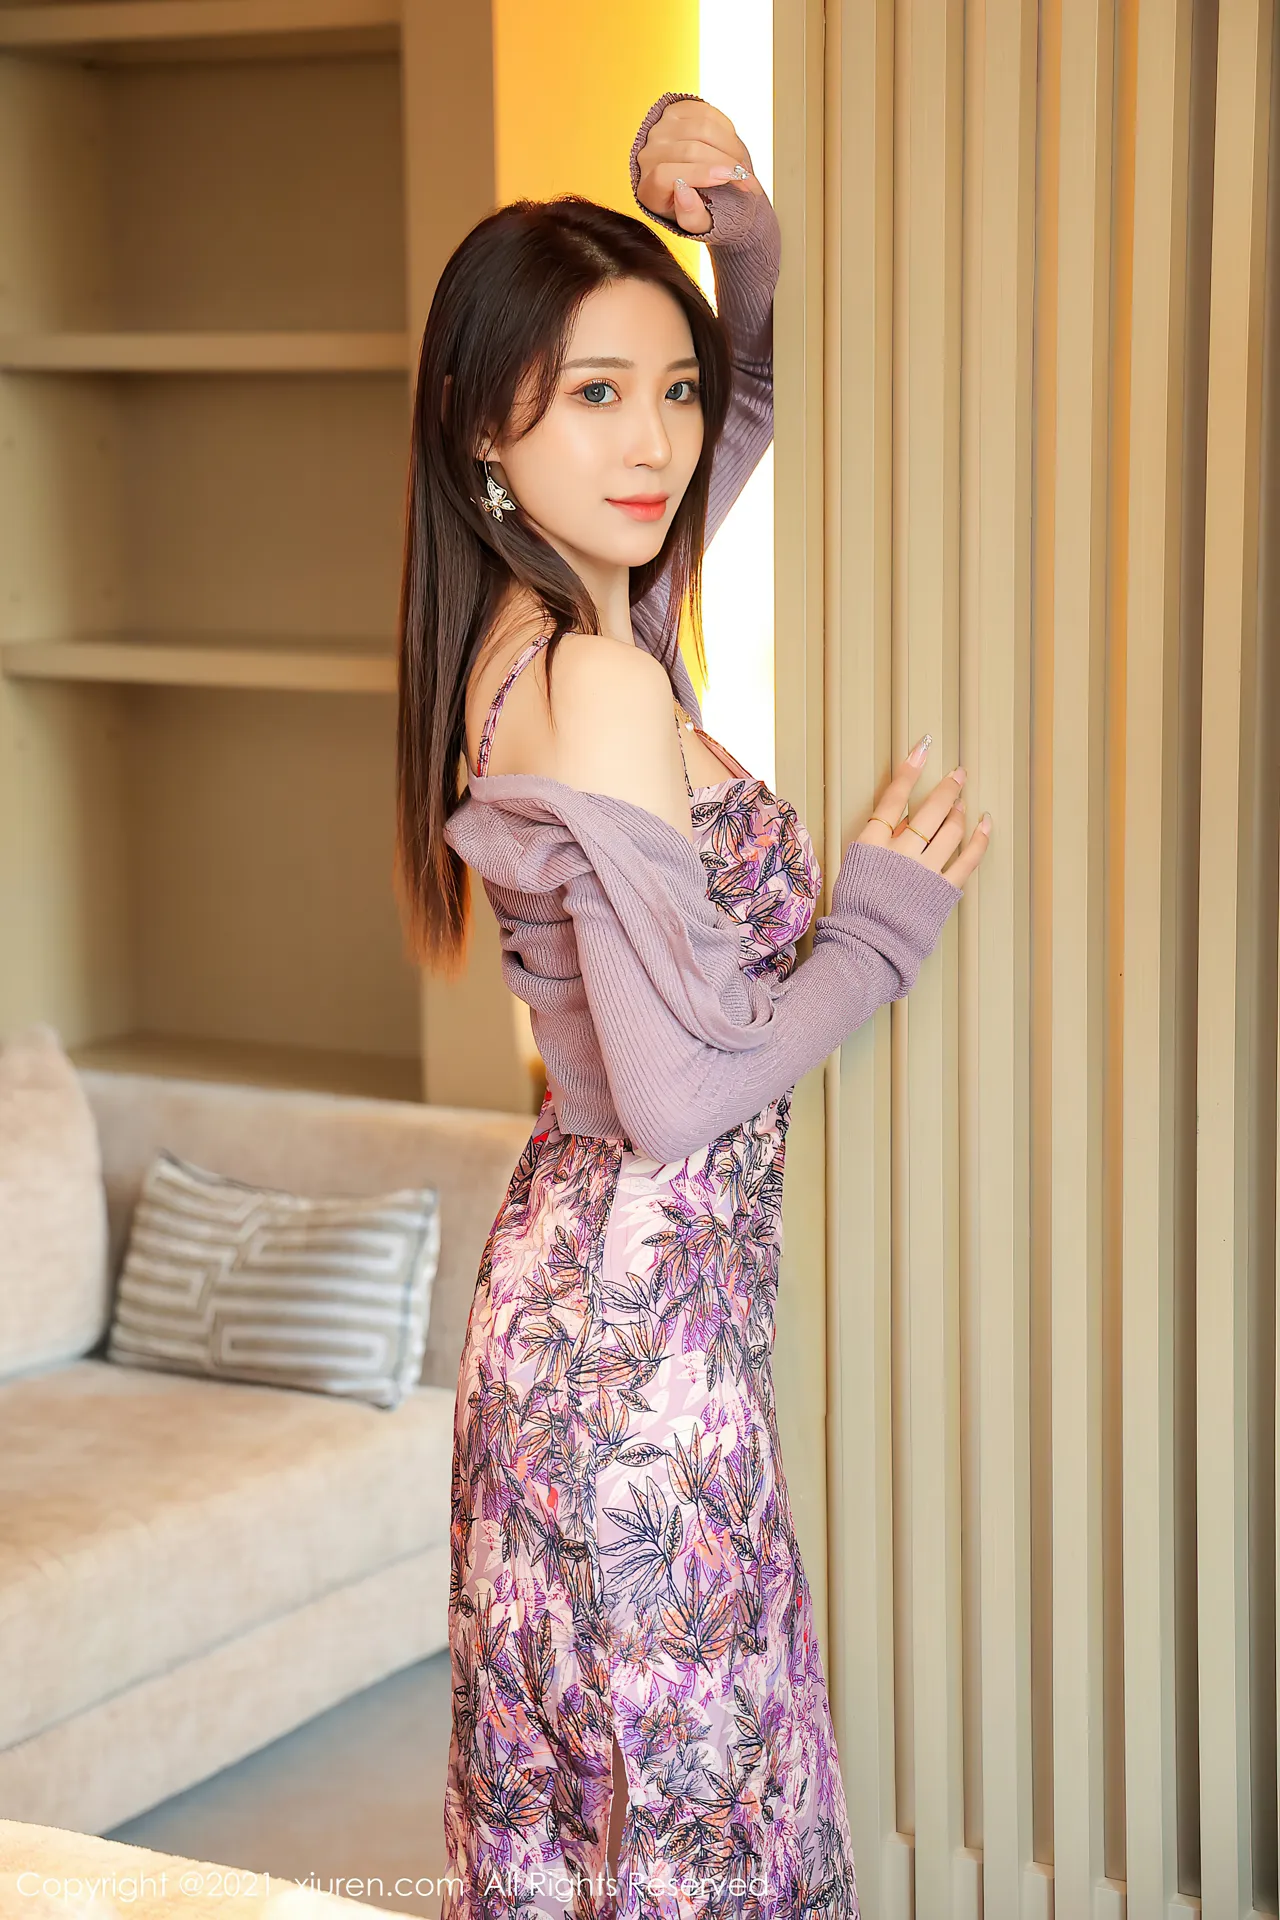 XIUREN(秀人网) NO.3950 Nice-looking & Adorable Asian Women 周慕汐baby